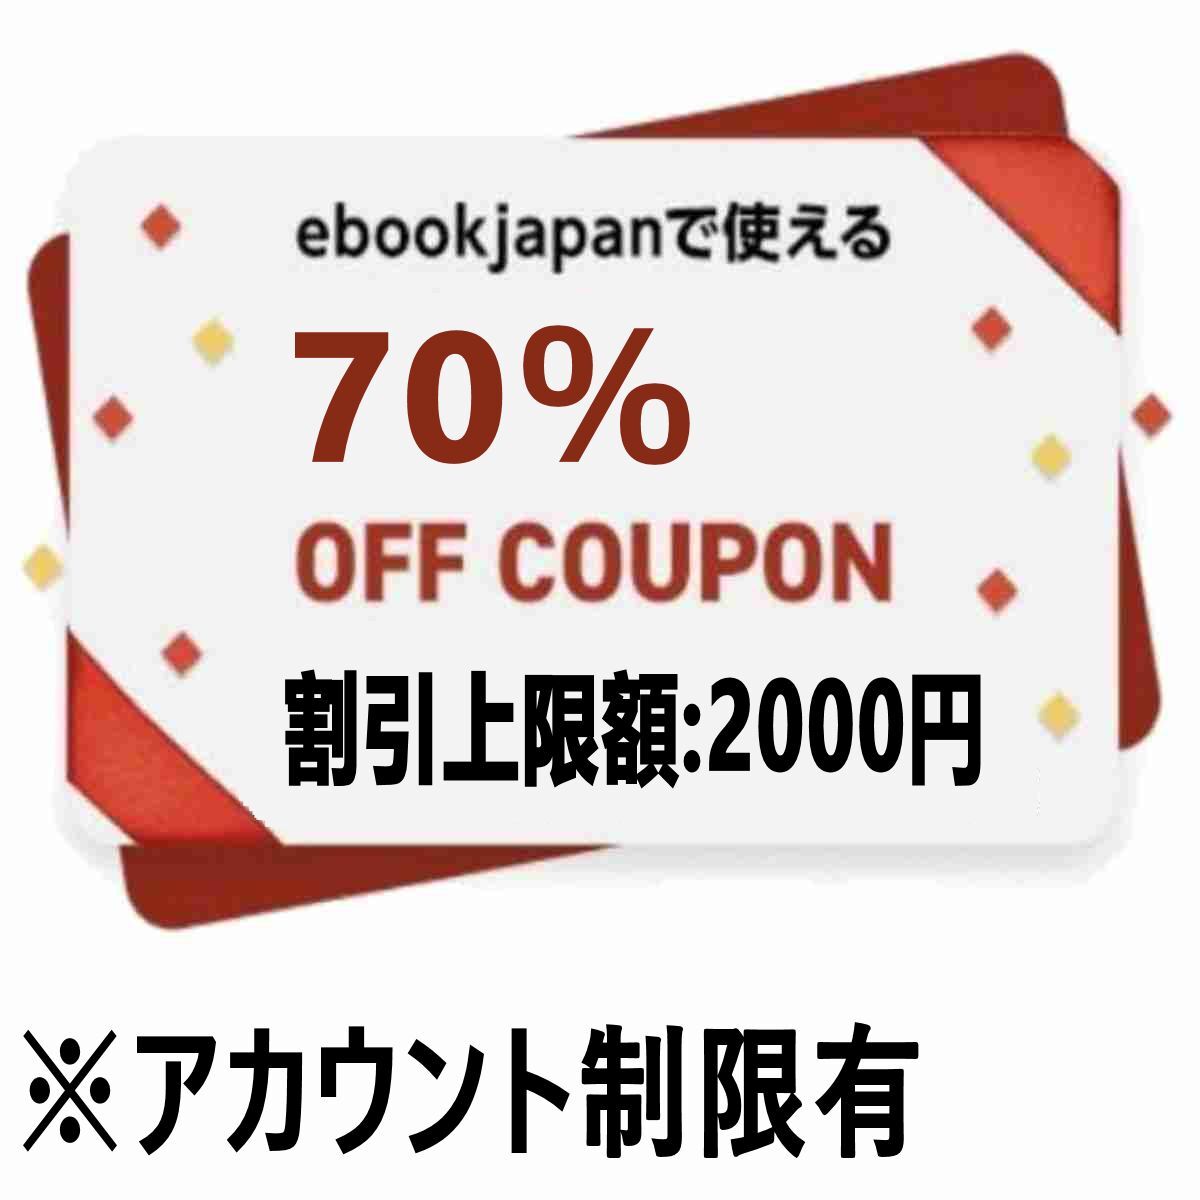 [e5xdck]70%OFF купон максимальный 2000 иен скидка ebookjapan ebook электронная книга Japan электронная книга электронная книга 